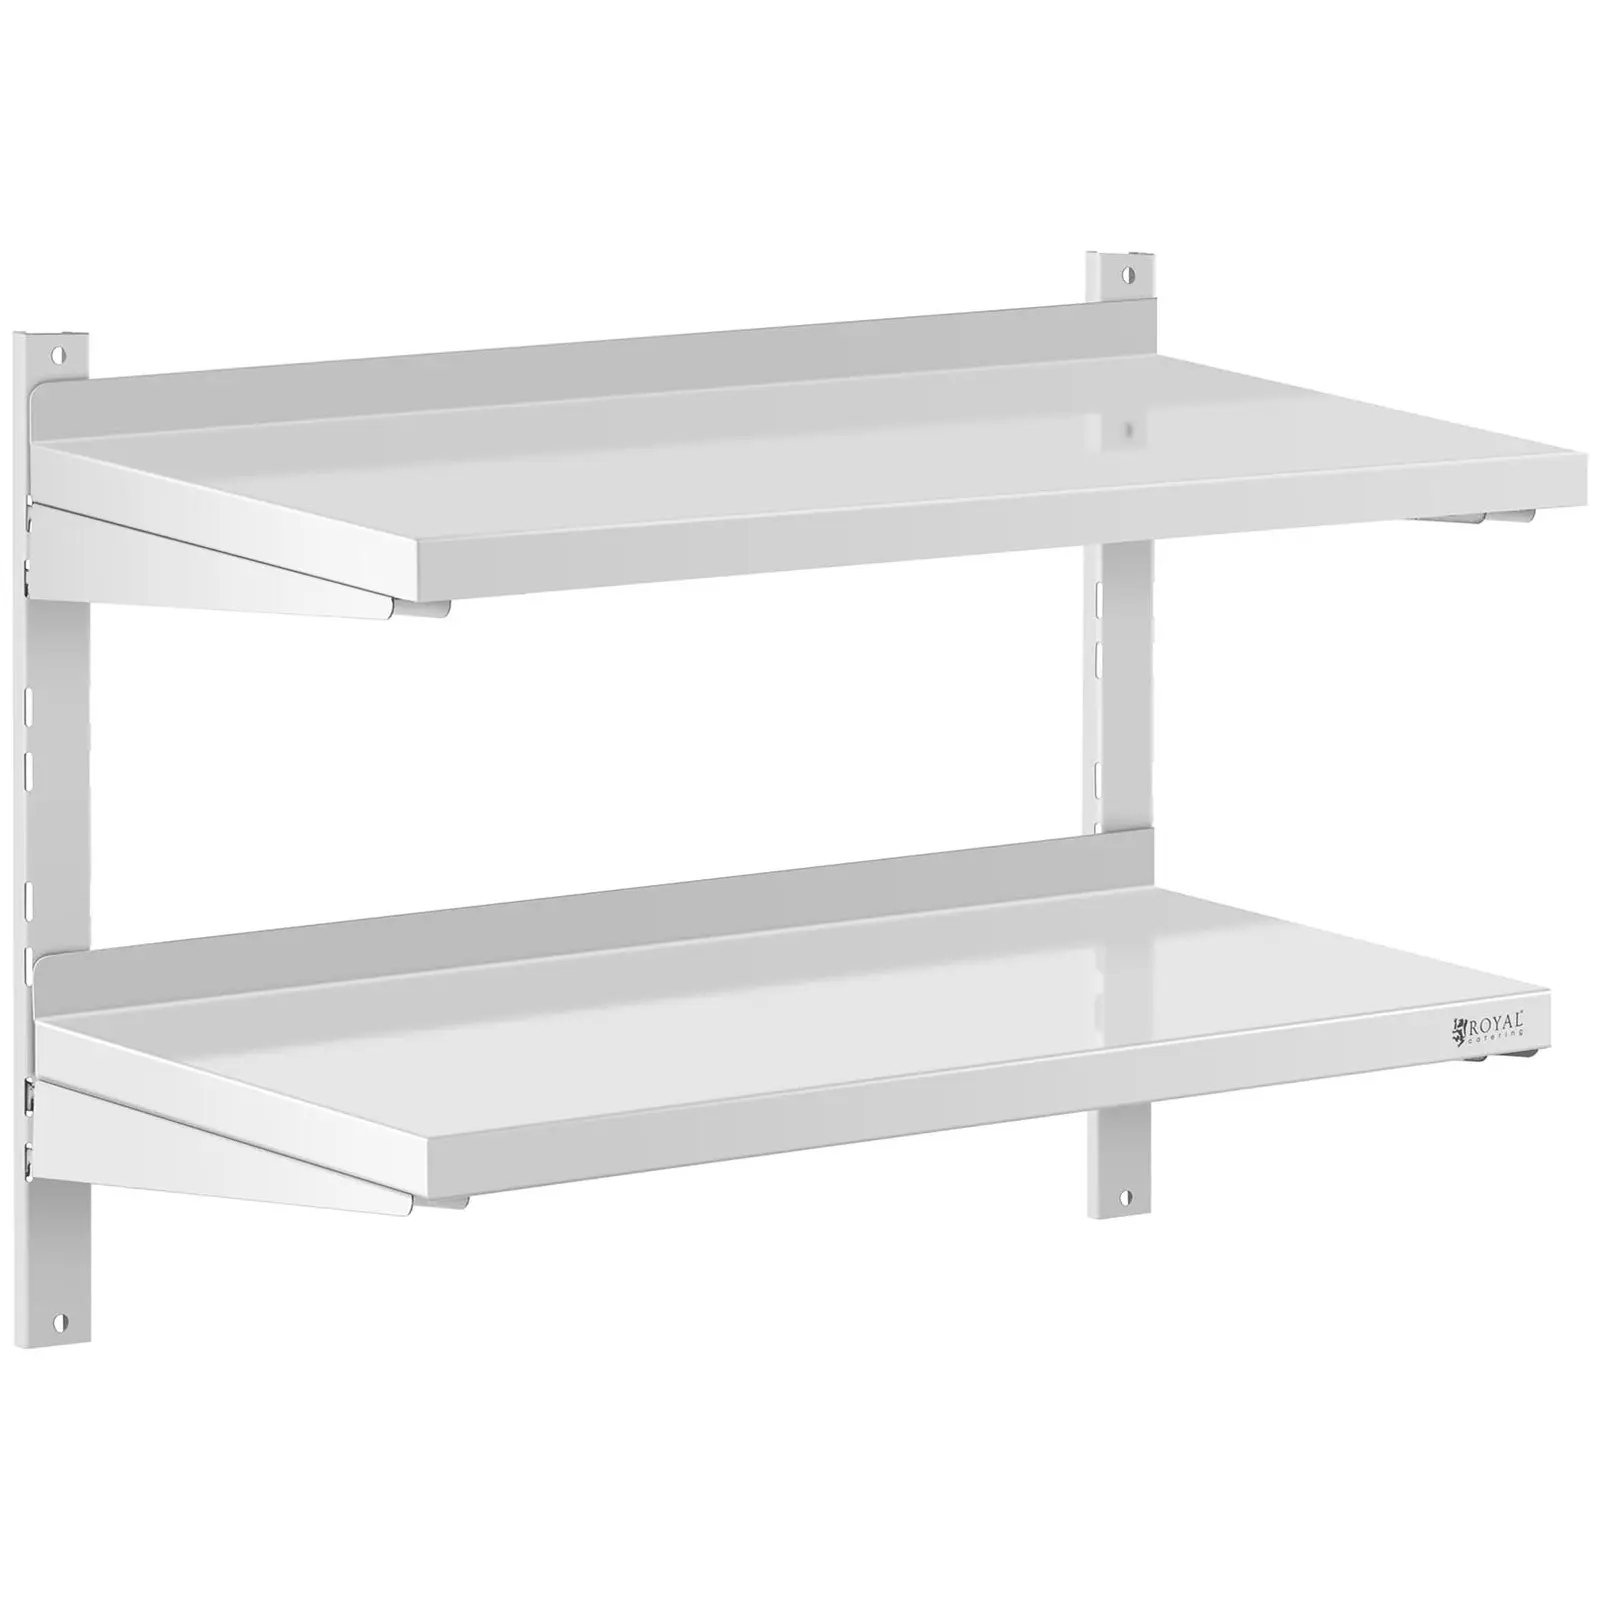 Stainless Steel Wall Shelf - 2 shelves - 40 x 80 cm